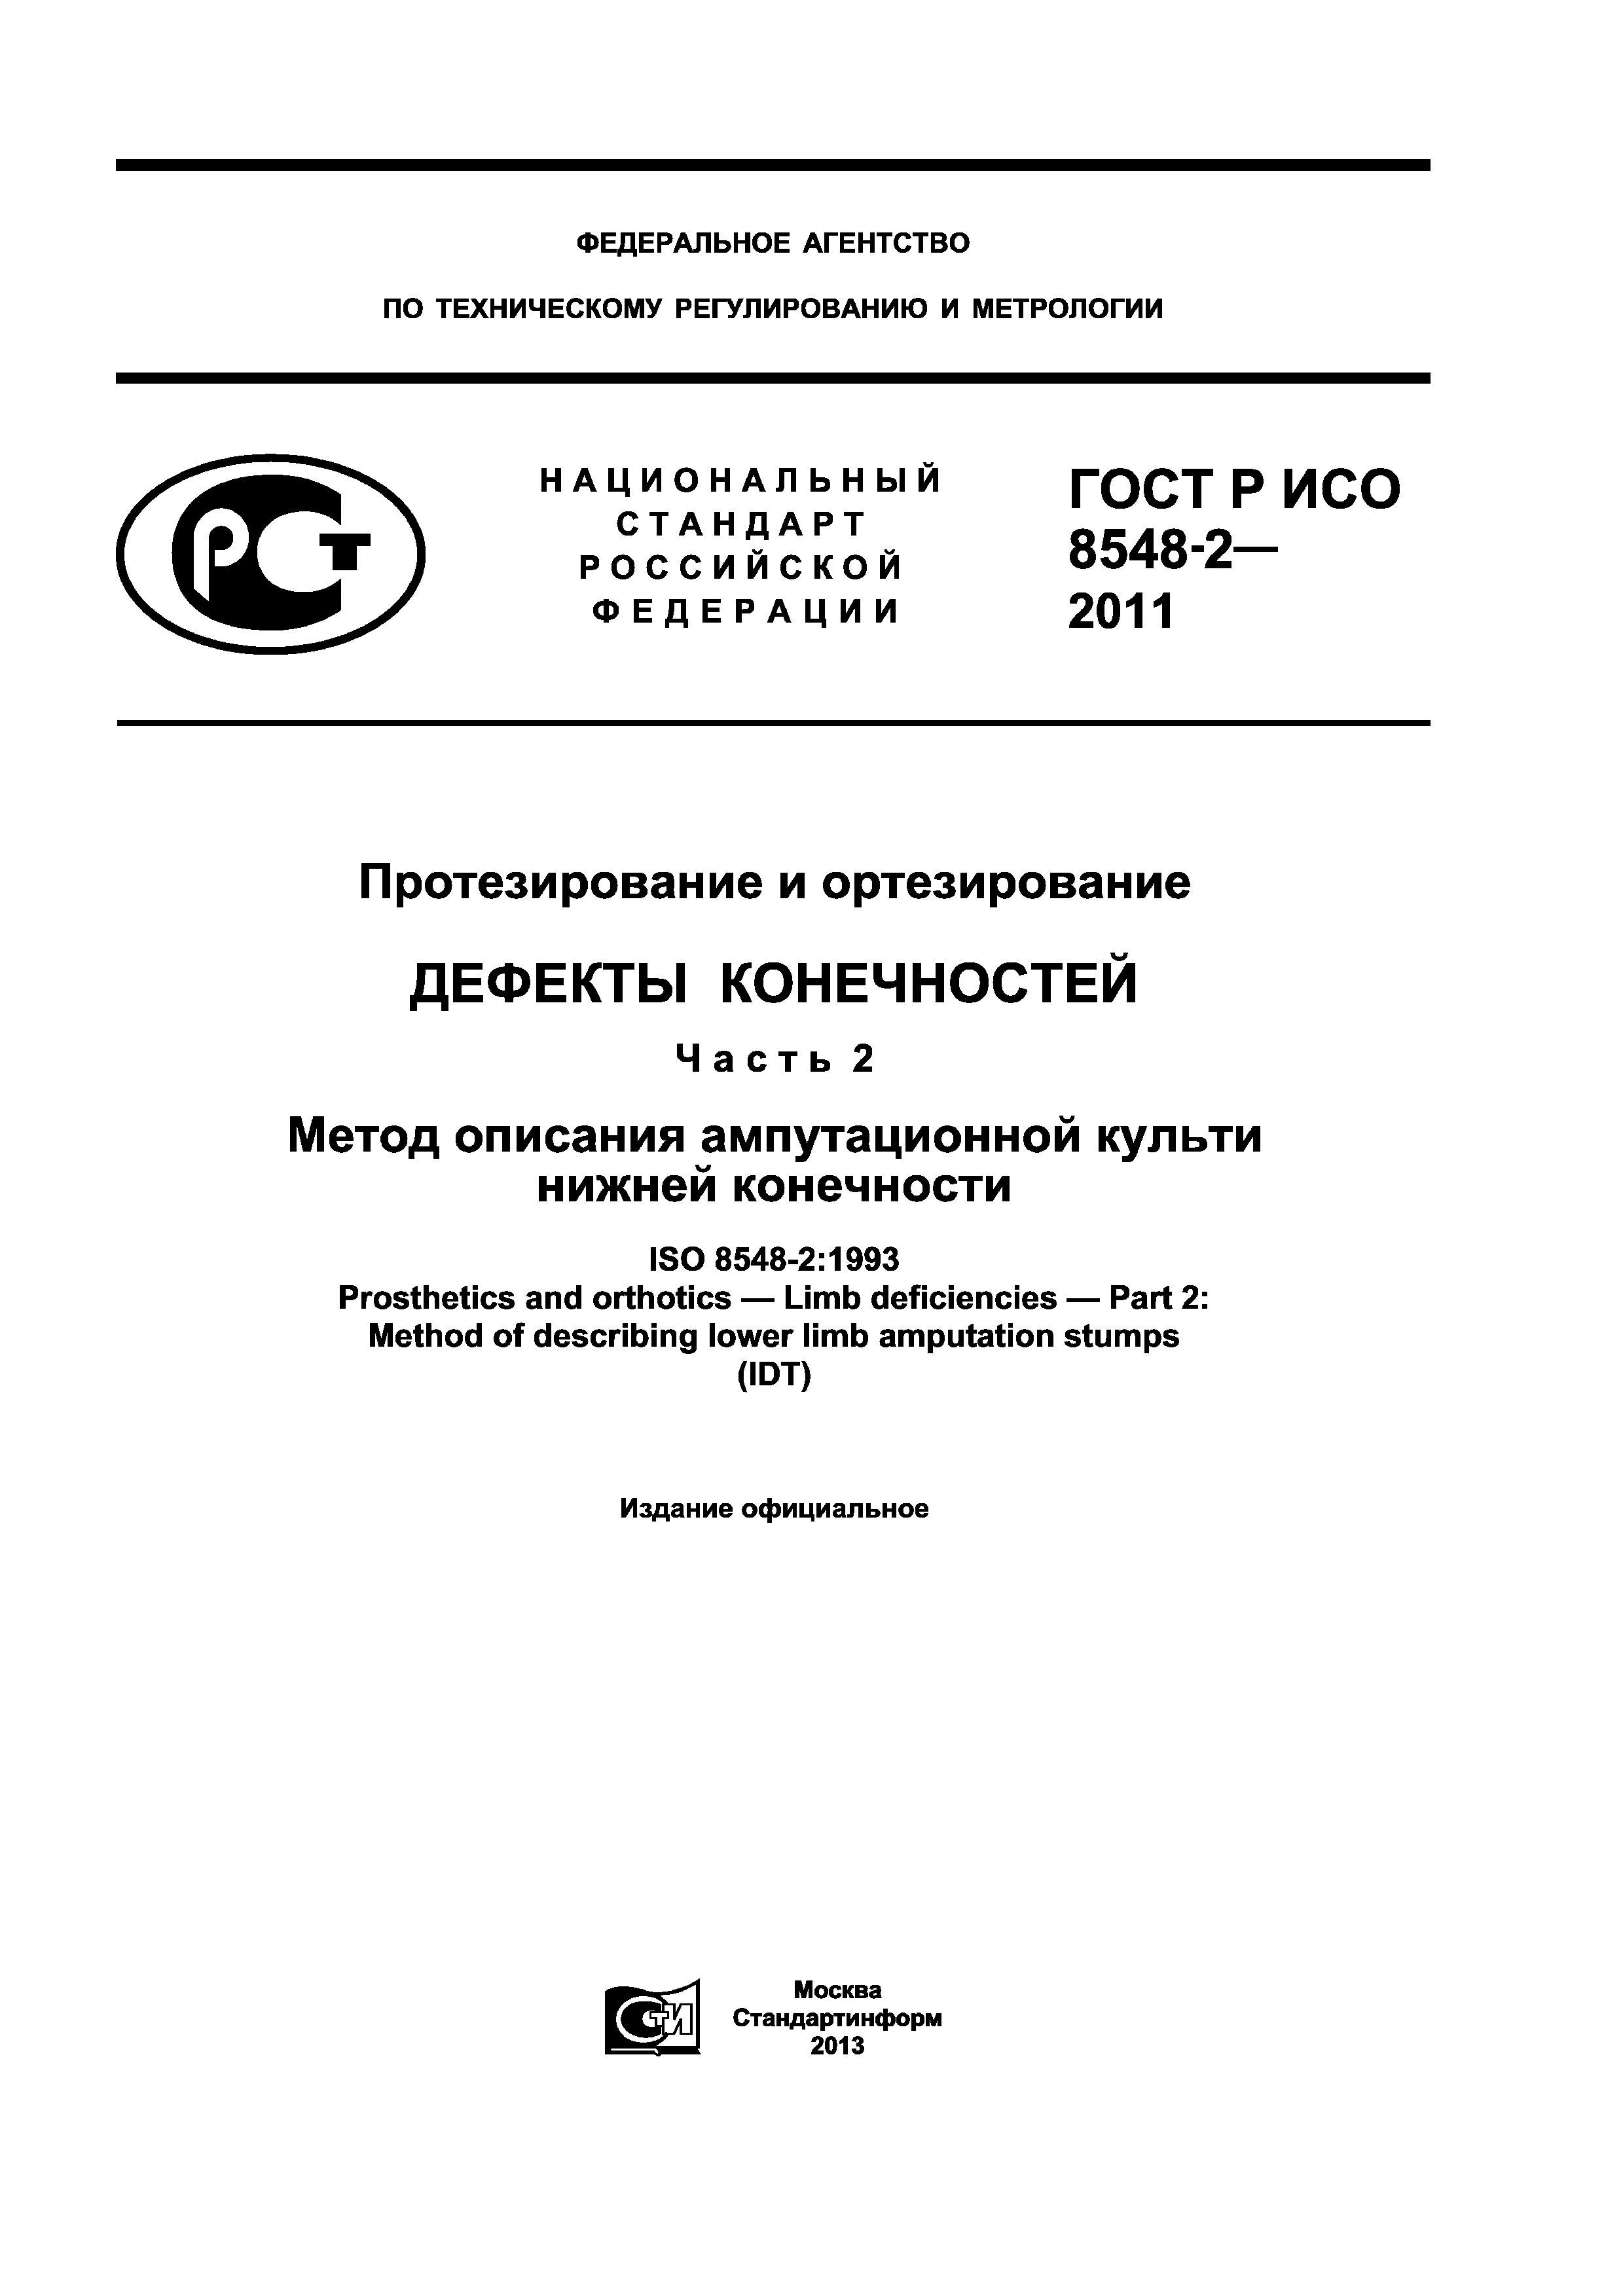 ГОСТ Р ИСО 8548-2-2011